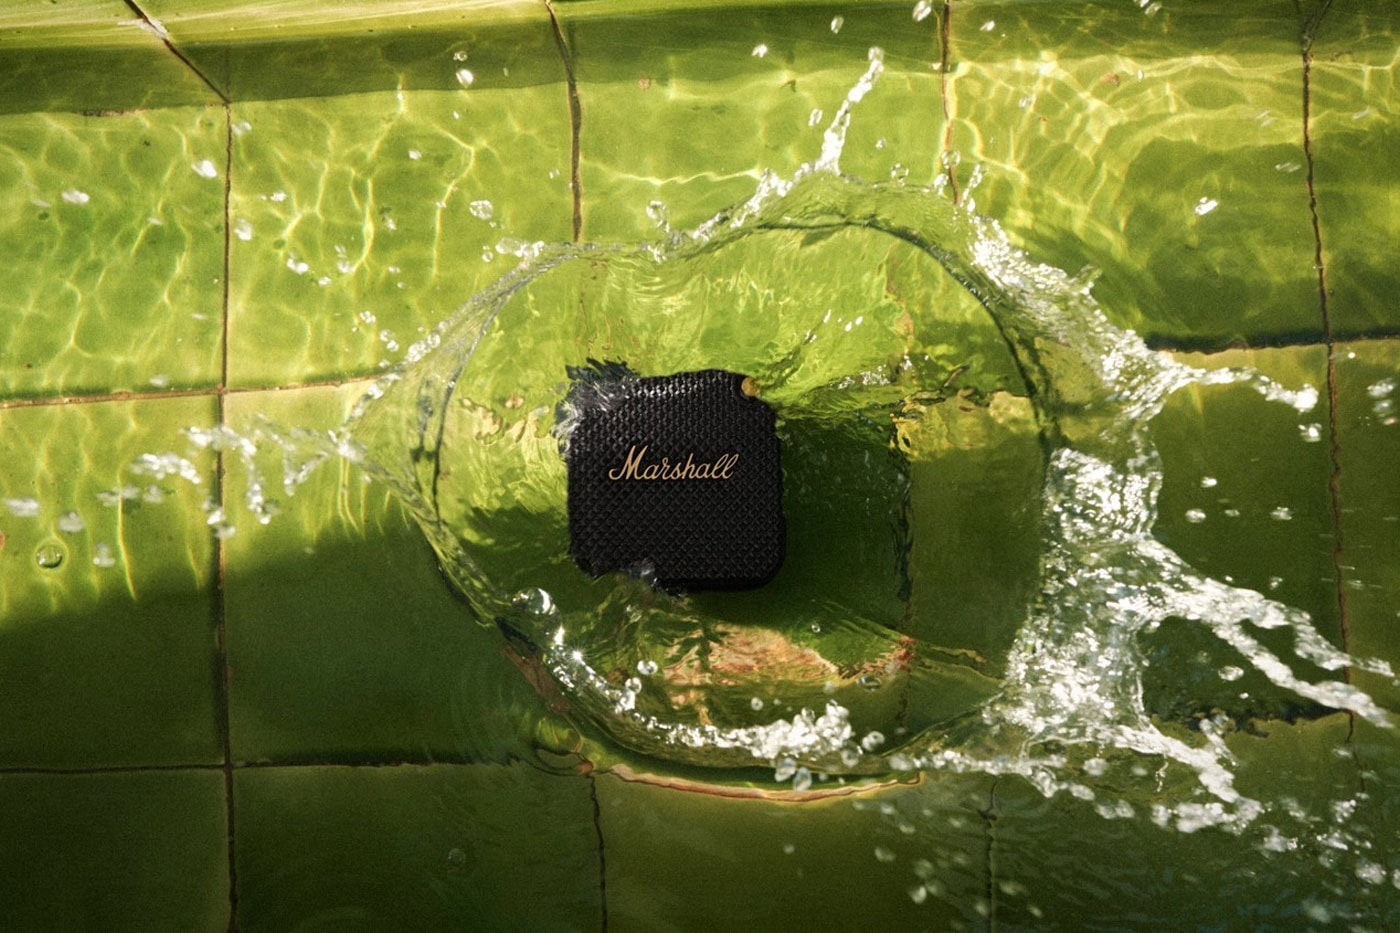 Marshall Willen Mobile Speaker mini ip67 waterproof dustproof release info date price